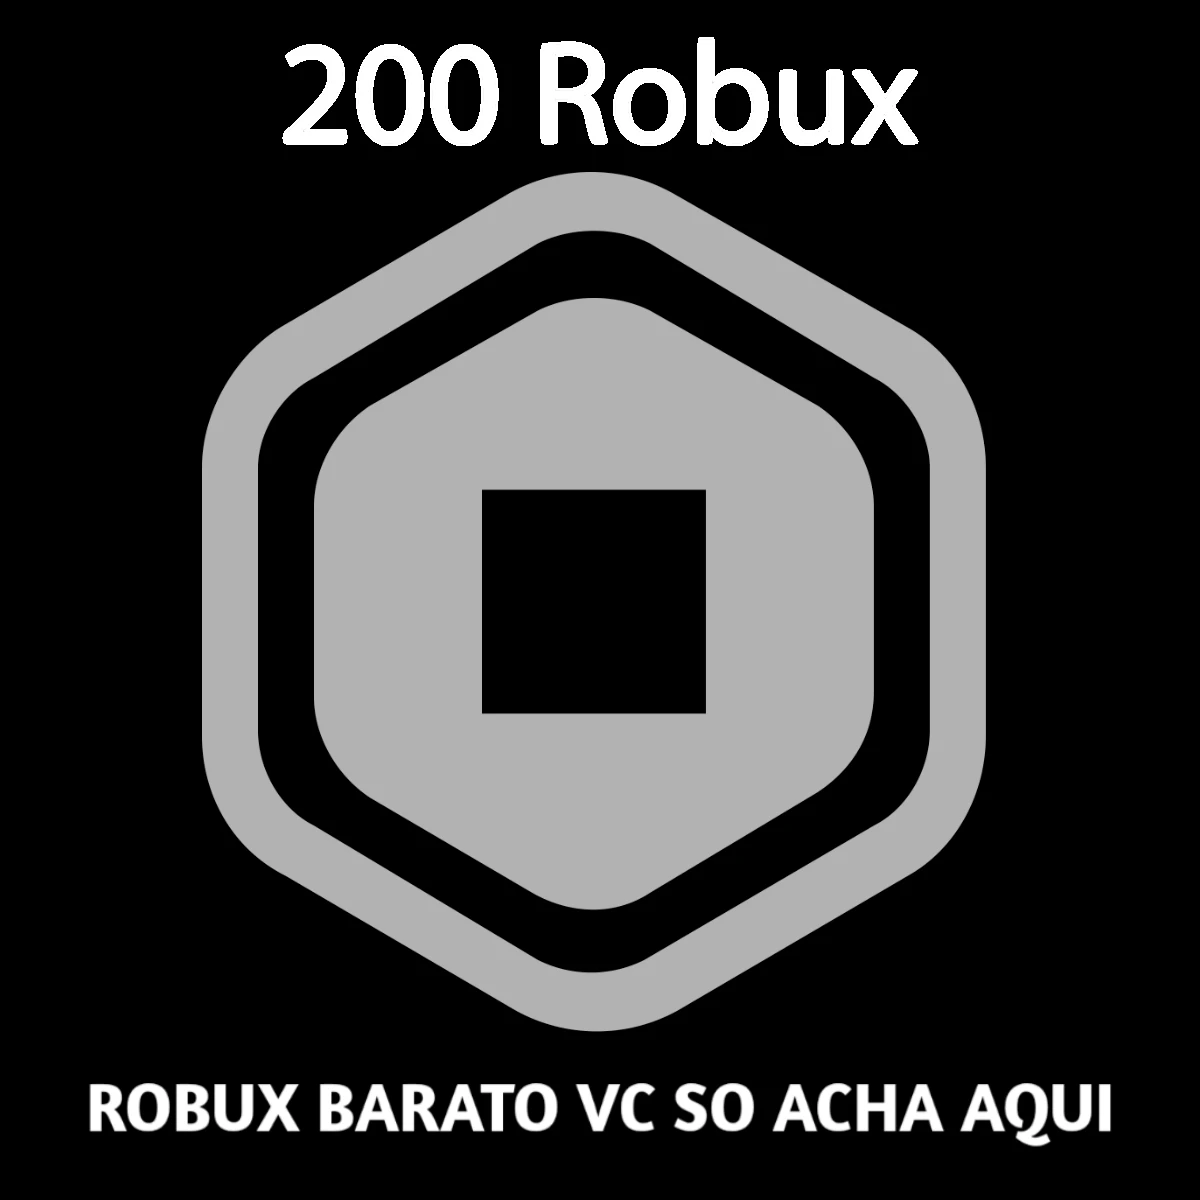 Roblox: 200 Robux - Muito Jogo